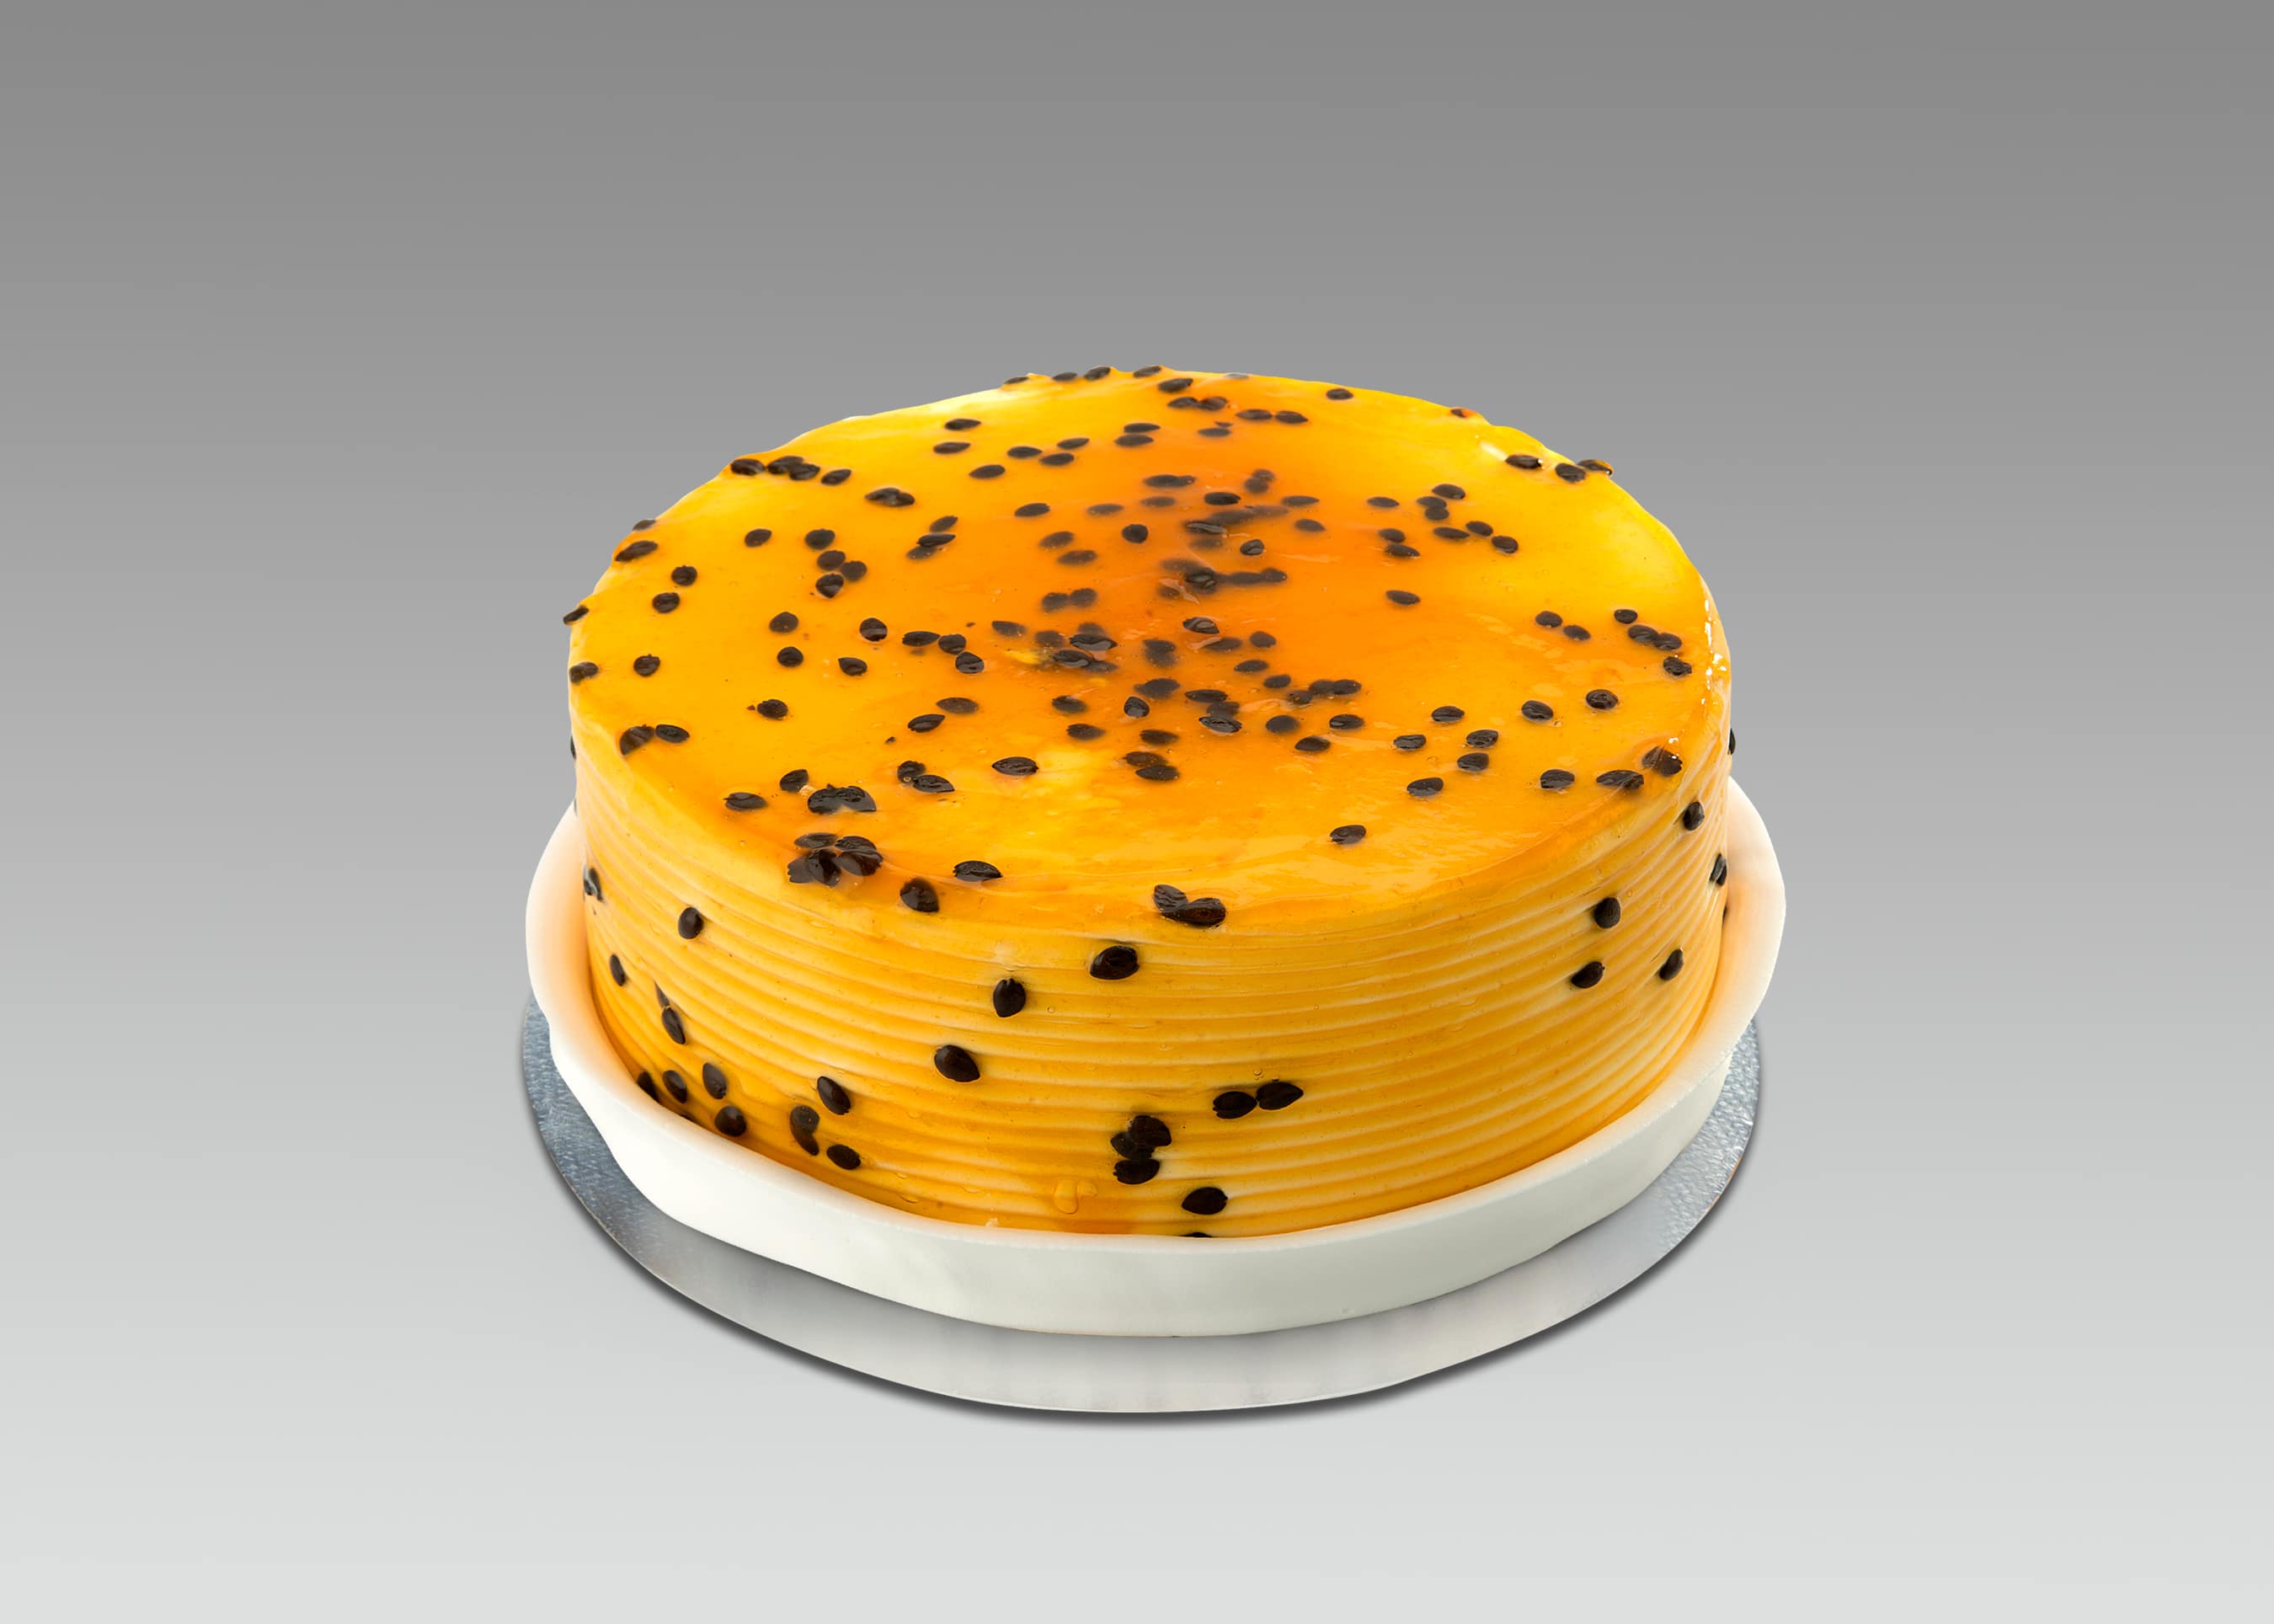 Cutie pie Cakes | Polayathode | Kollam | Premium pastry | Birthday cakes -  YouTube